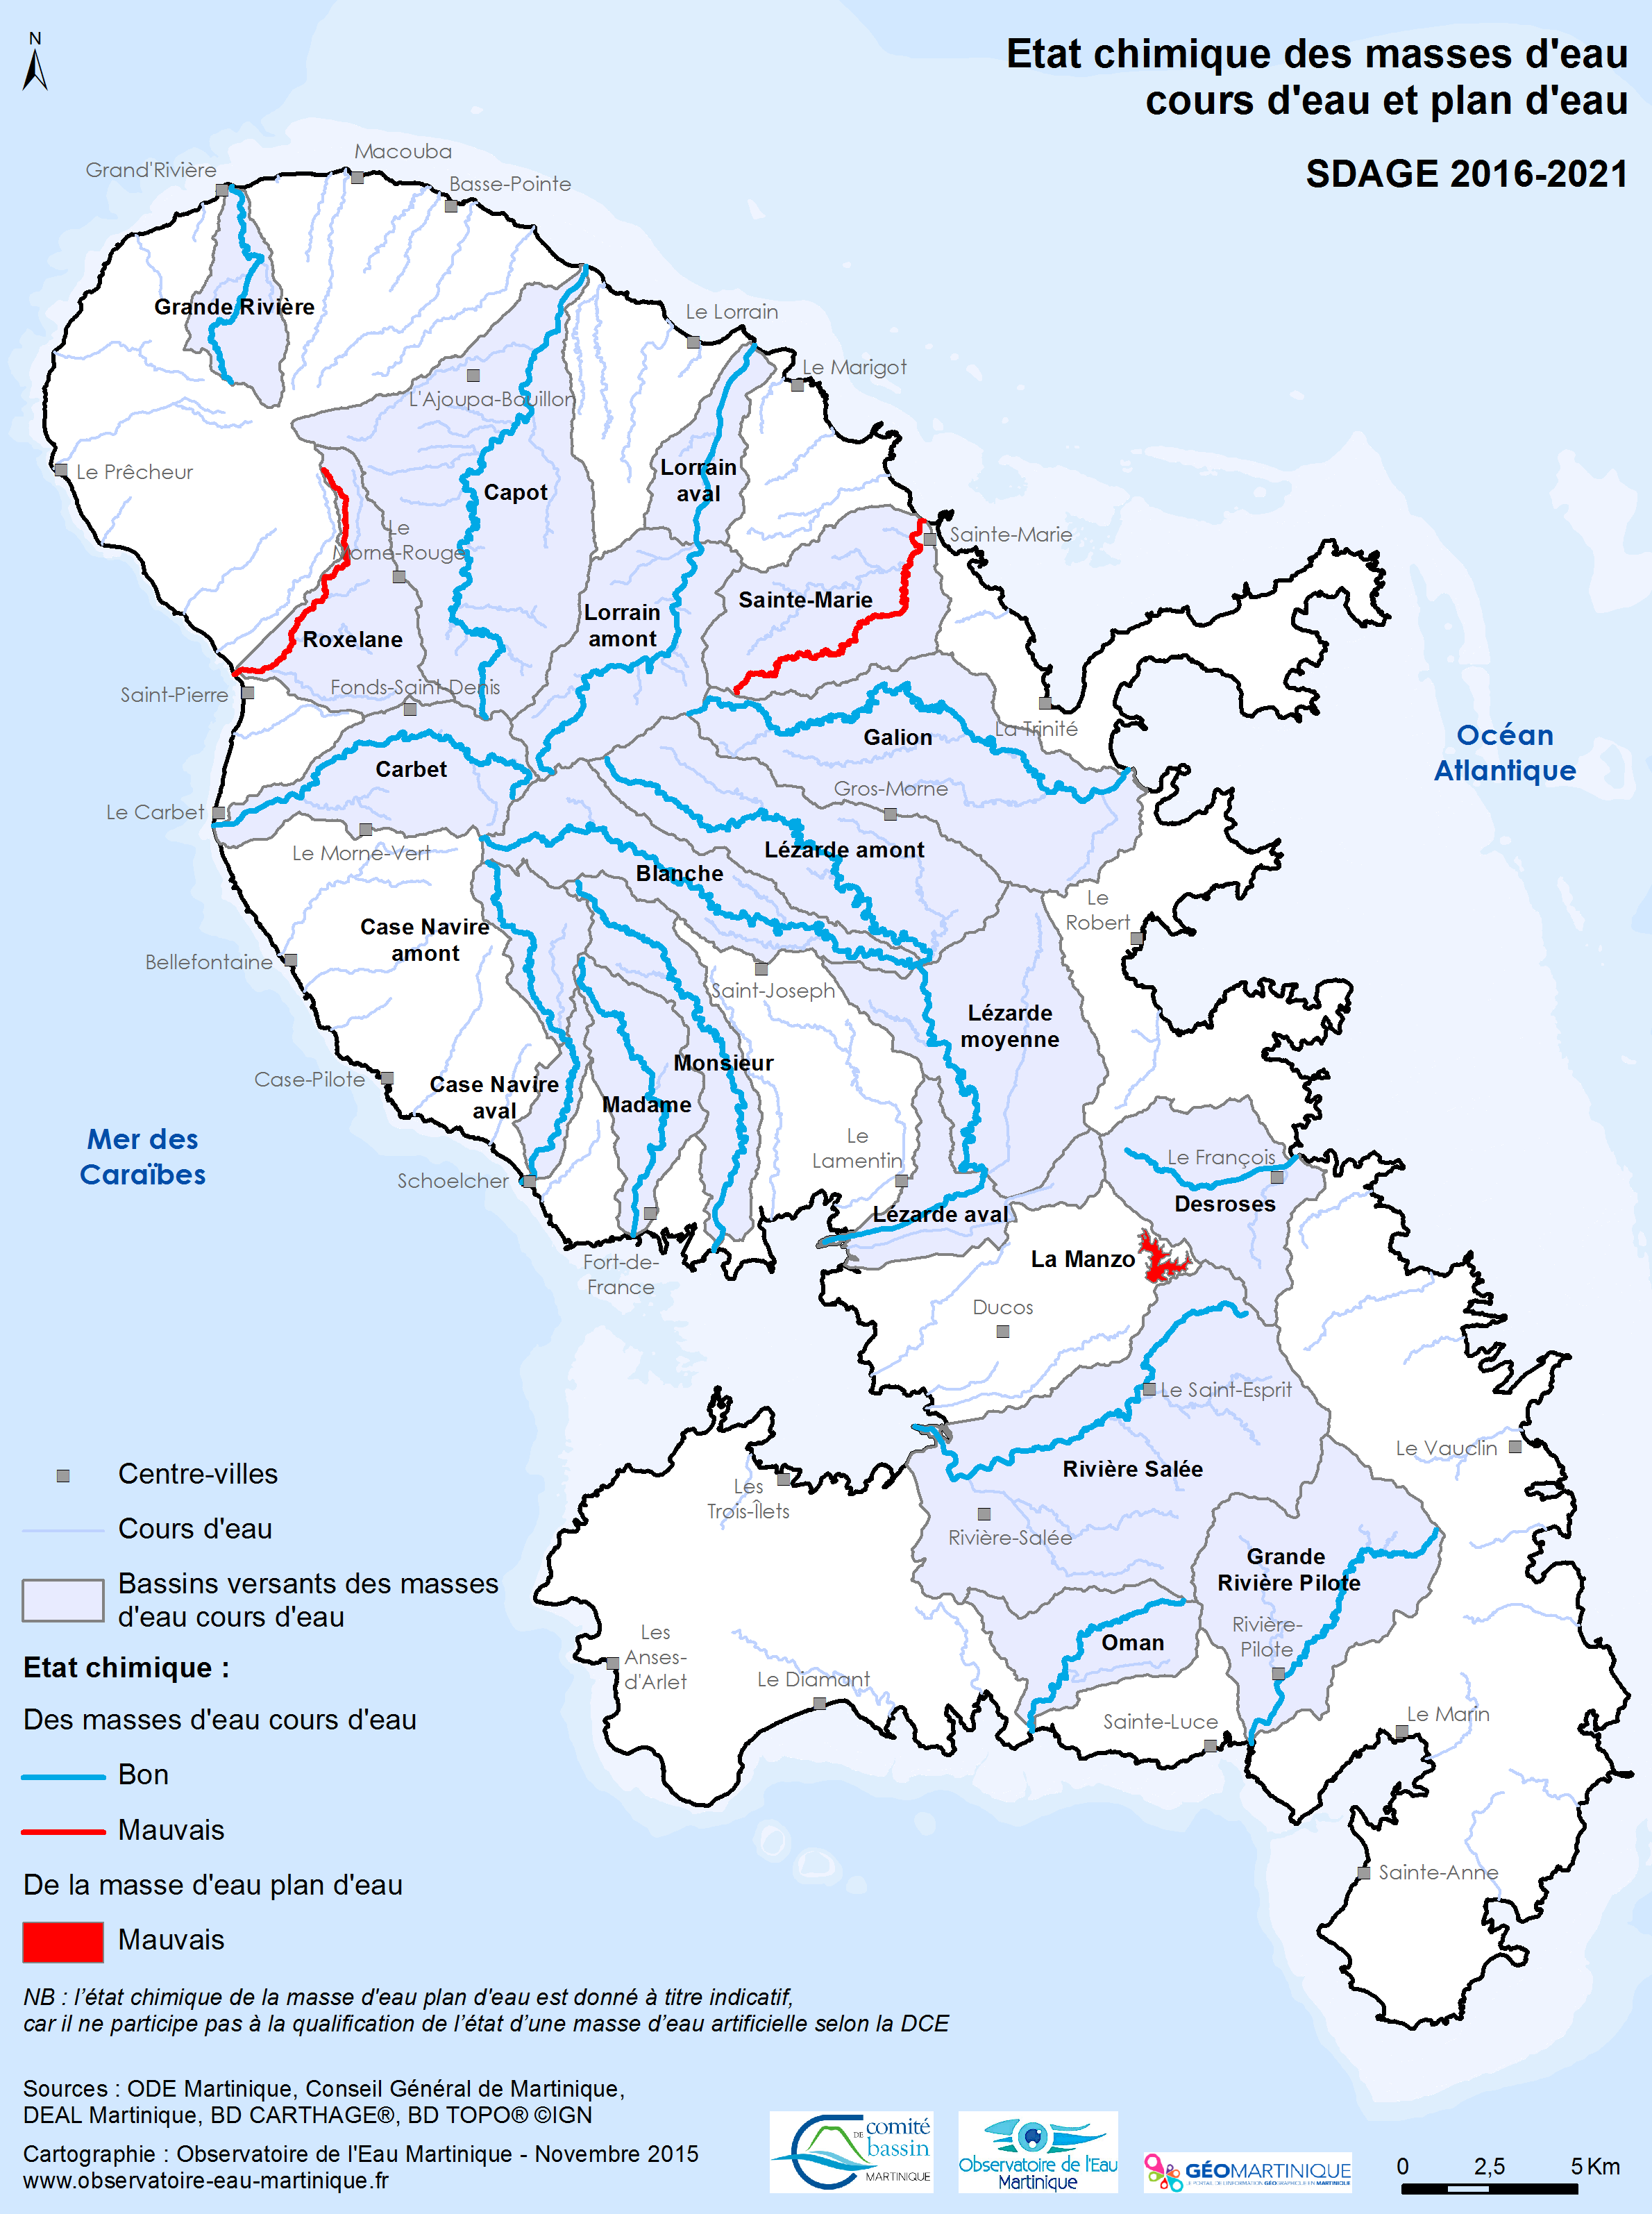 SDAGE 2016-2021 - Etat chimique des masses d'eau cours d'eau et plan d'eau